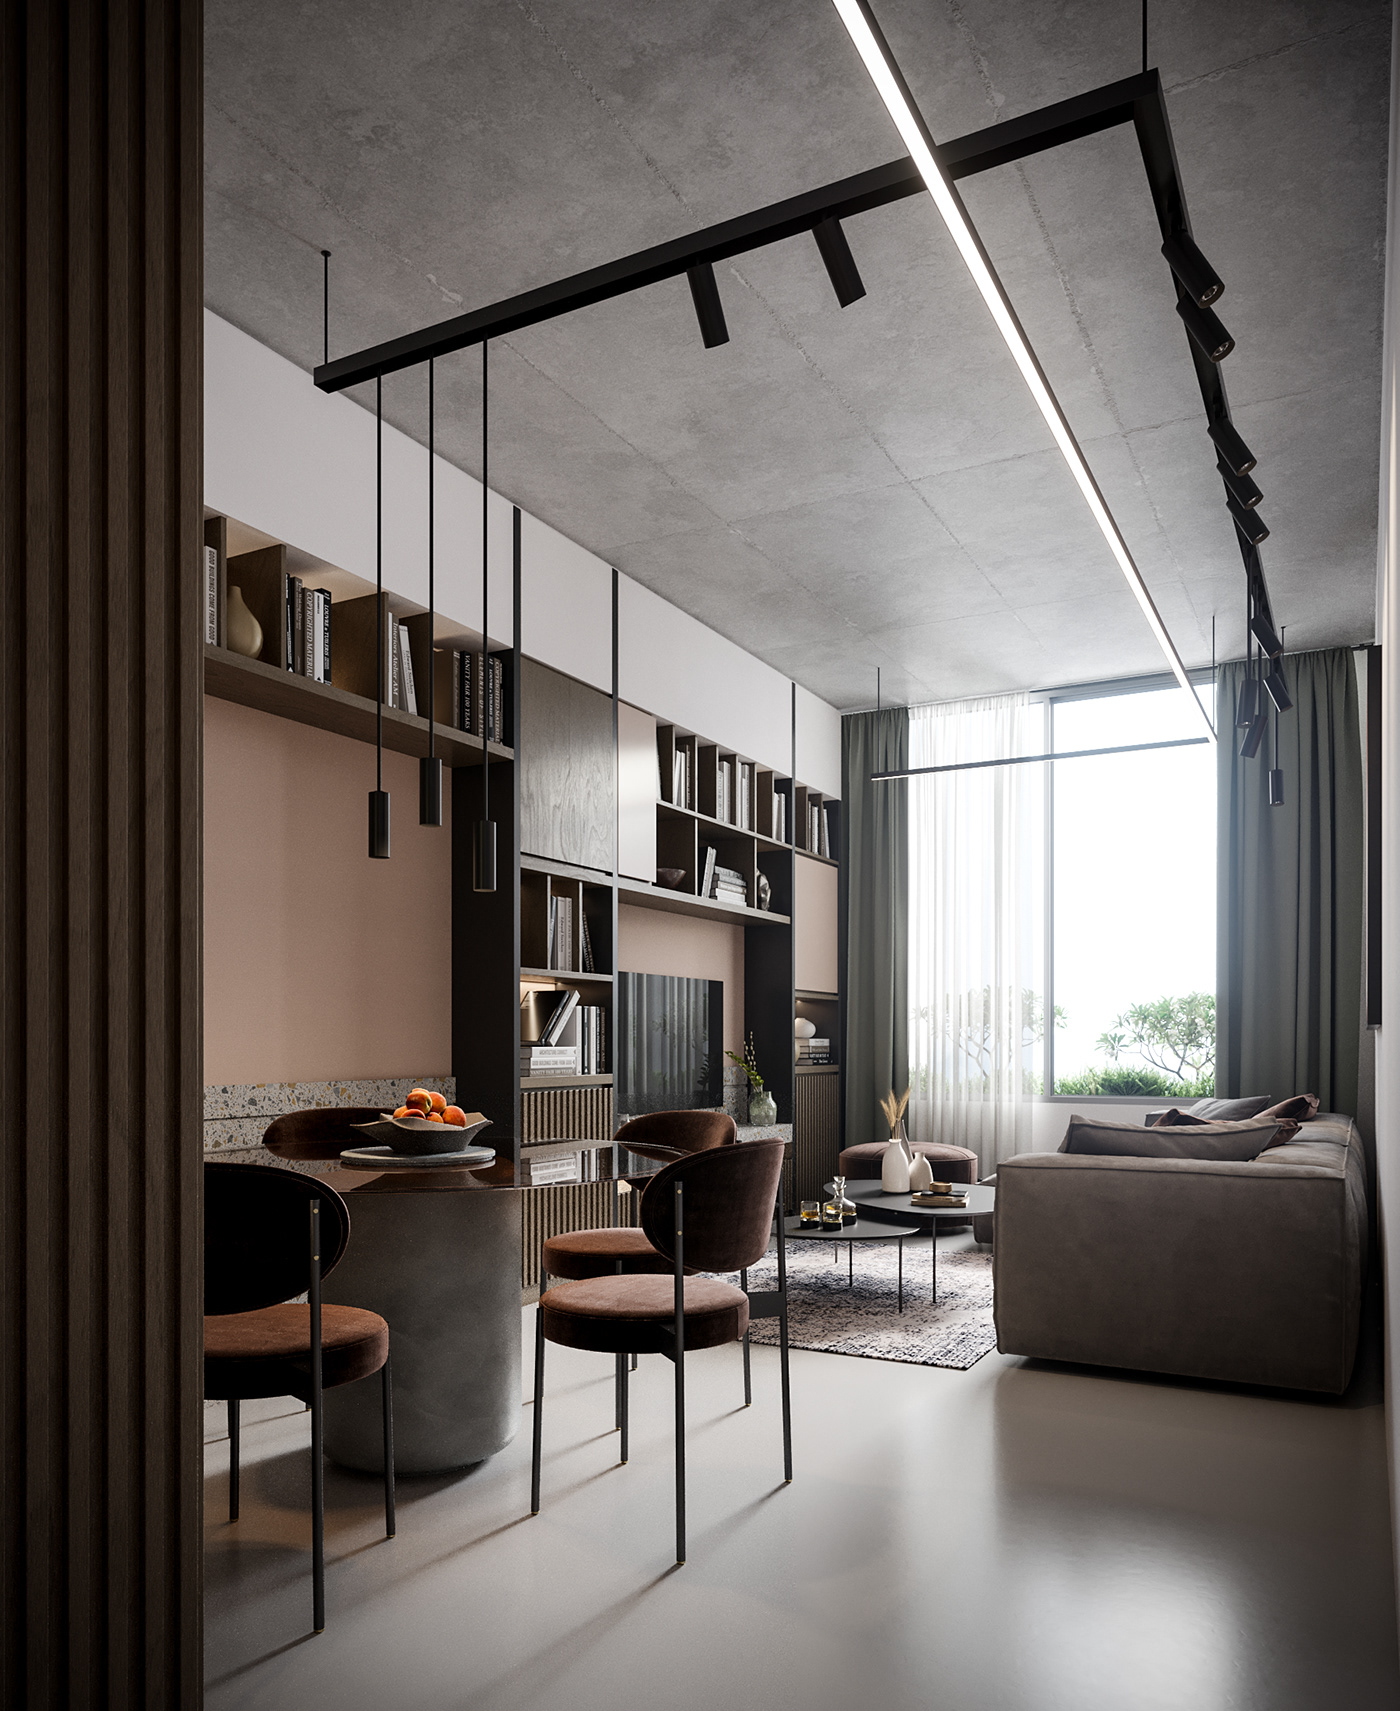 archviz bedroom interiordesign kitchen livingroom photorealism rendering Renders